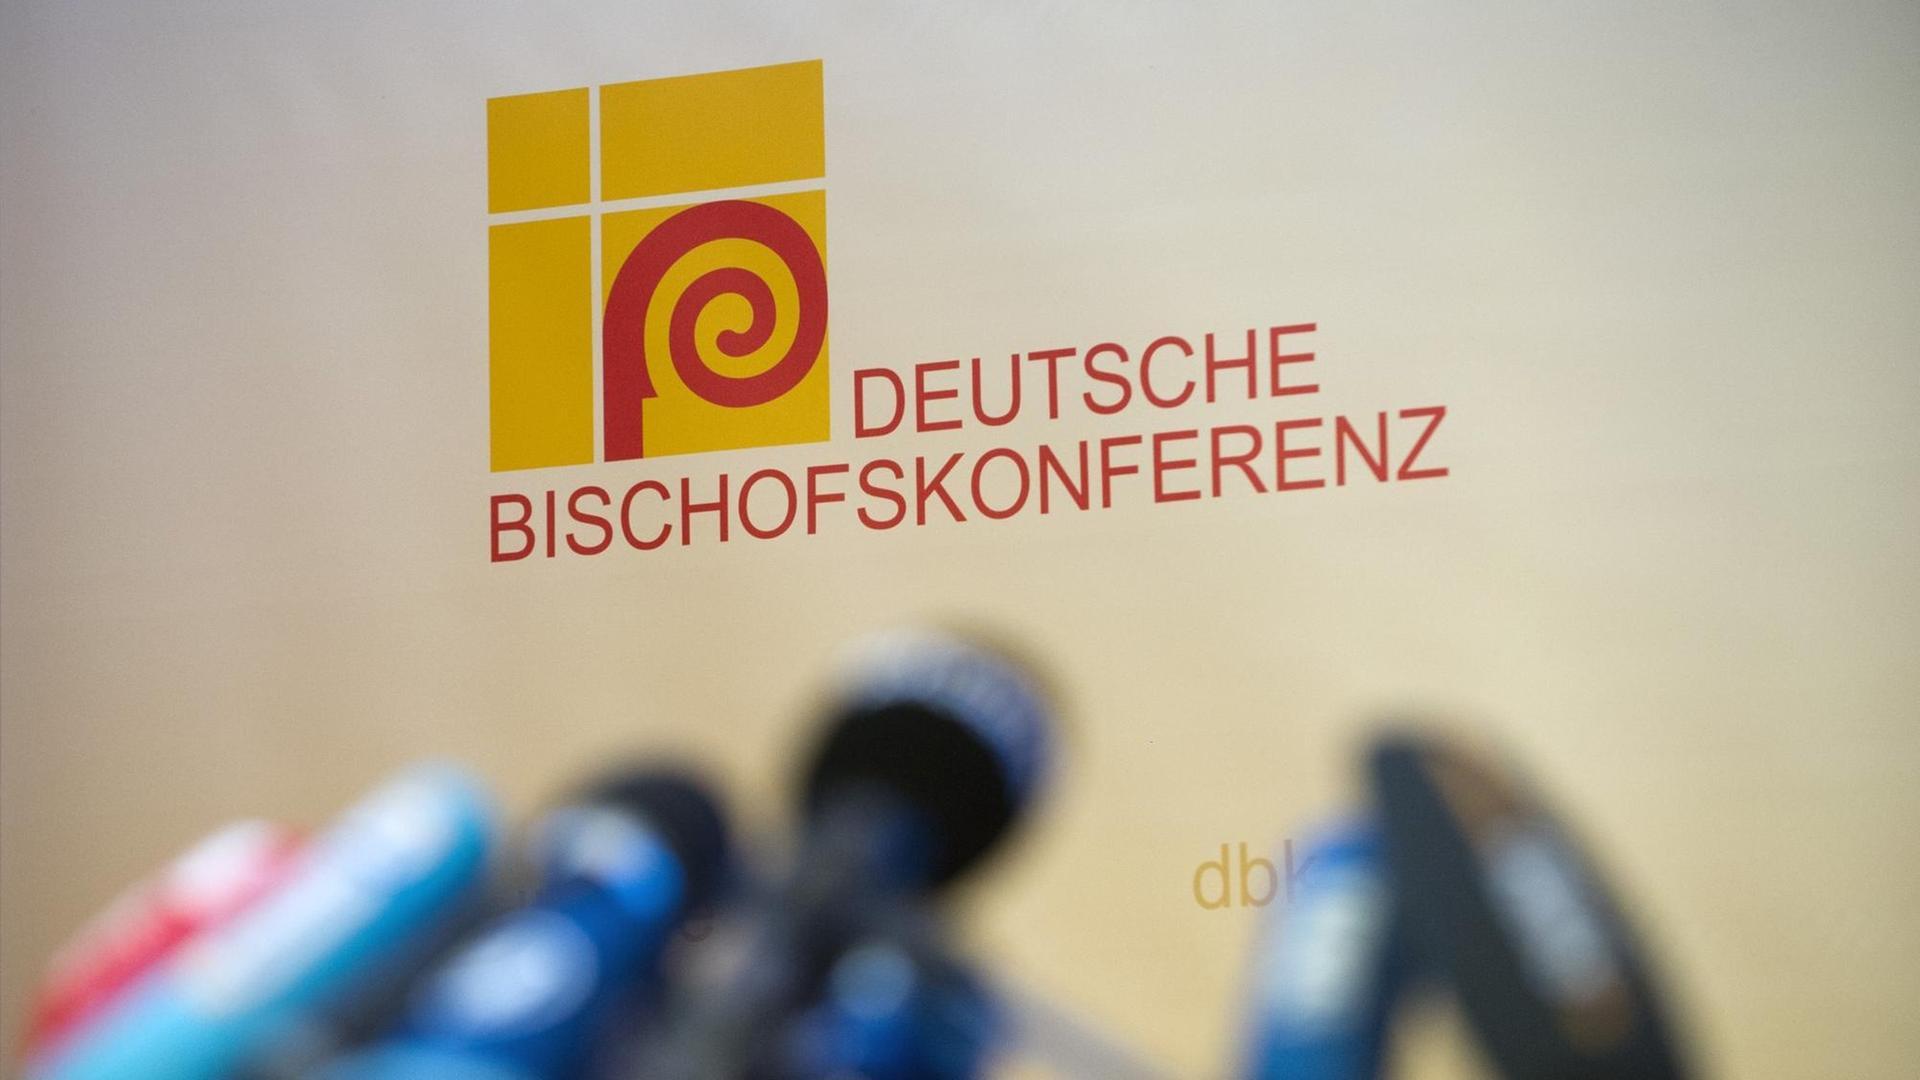 Presse-Mikrofone stehen unscharf abgelichtet vor dem Logo der Deutschen Bischofskonferenz